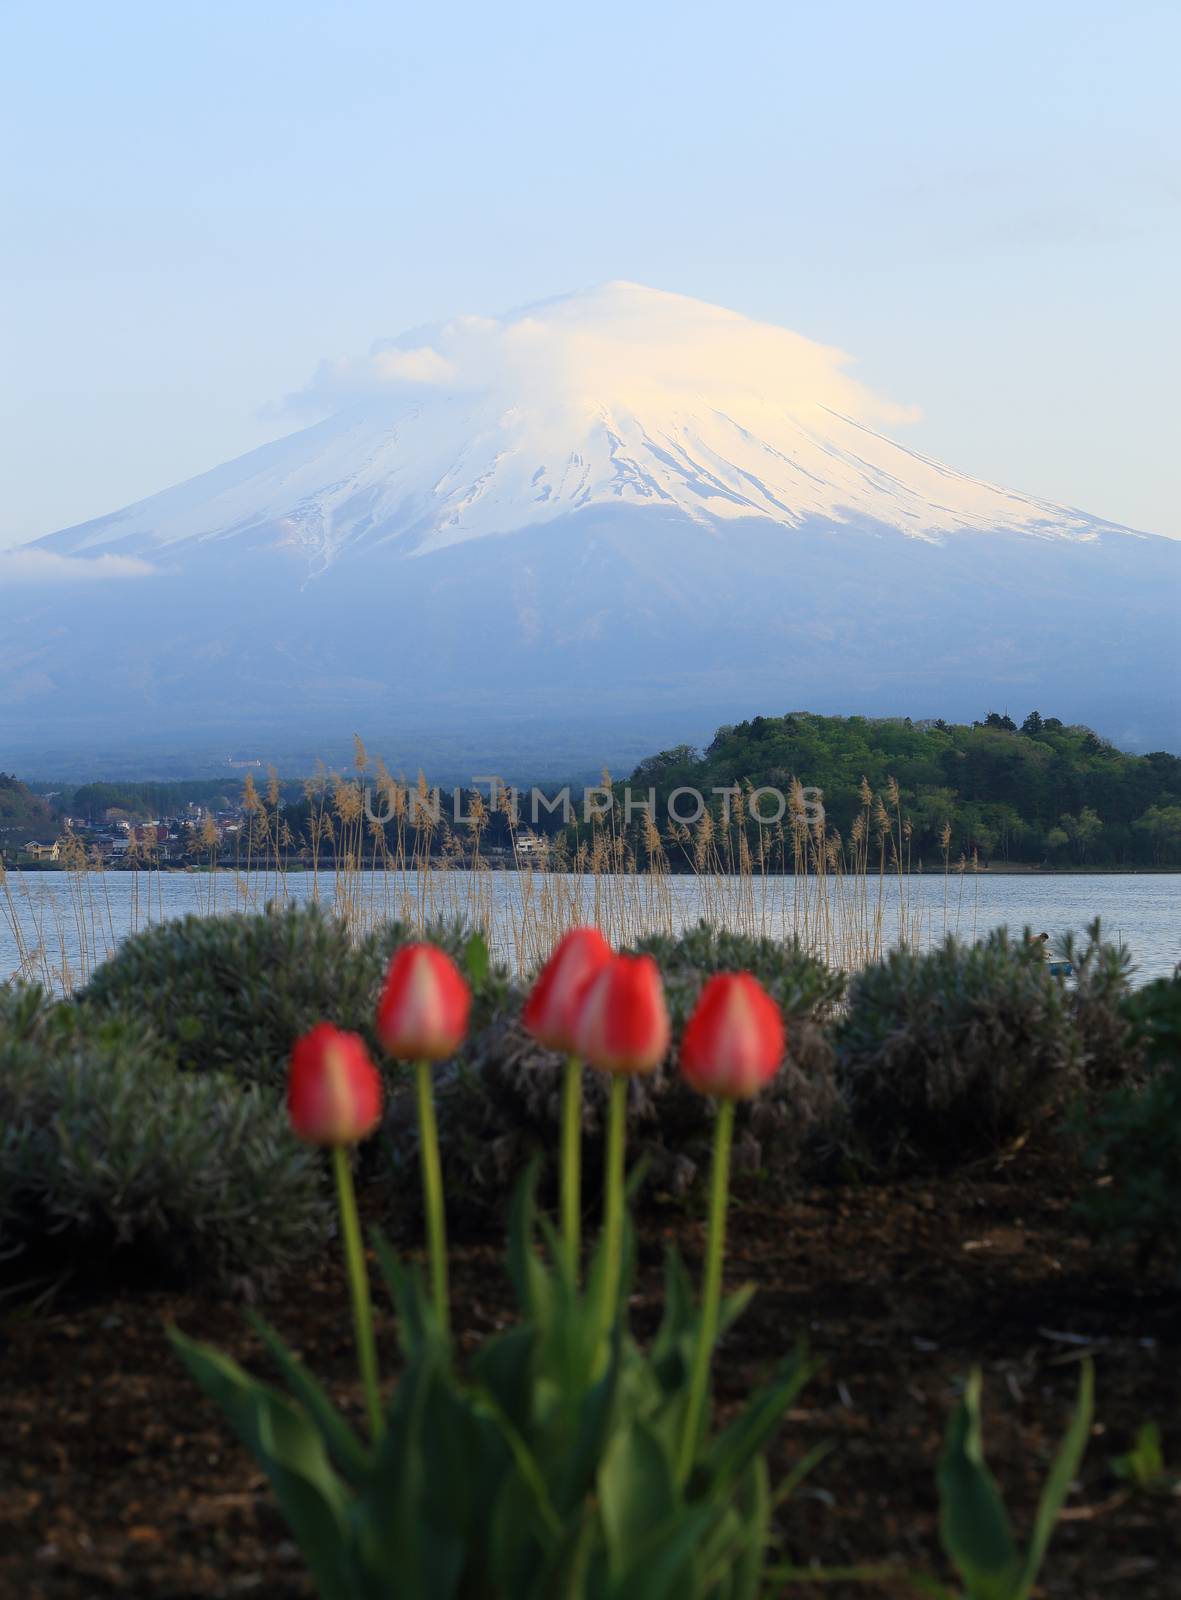 Mount Fuji, view from Lake Kawaguchiko by geargodz